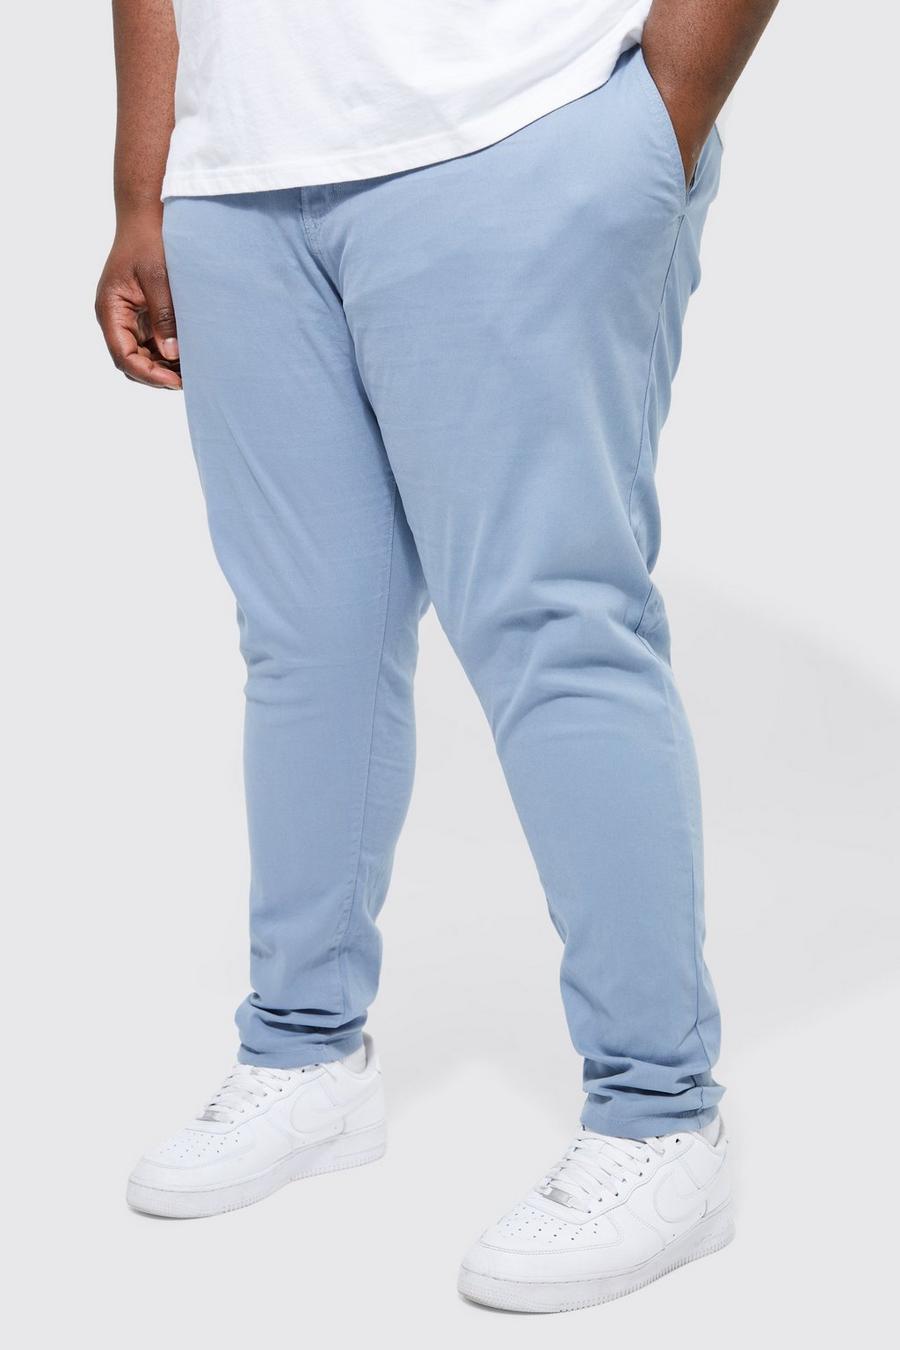 Pantalón Plus chino pitillo elástico con cintura fija, Denim-blue image number 1